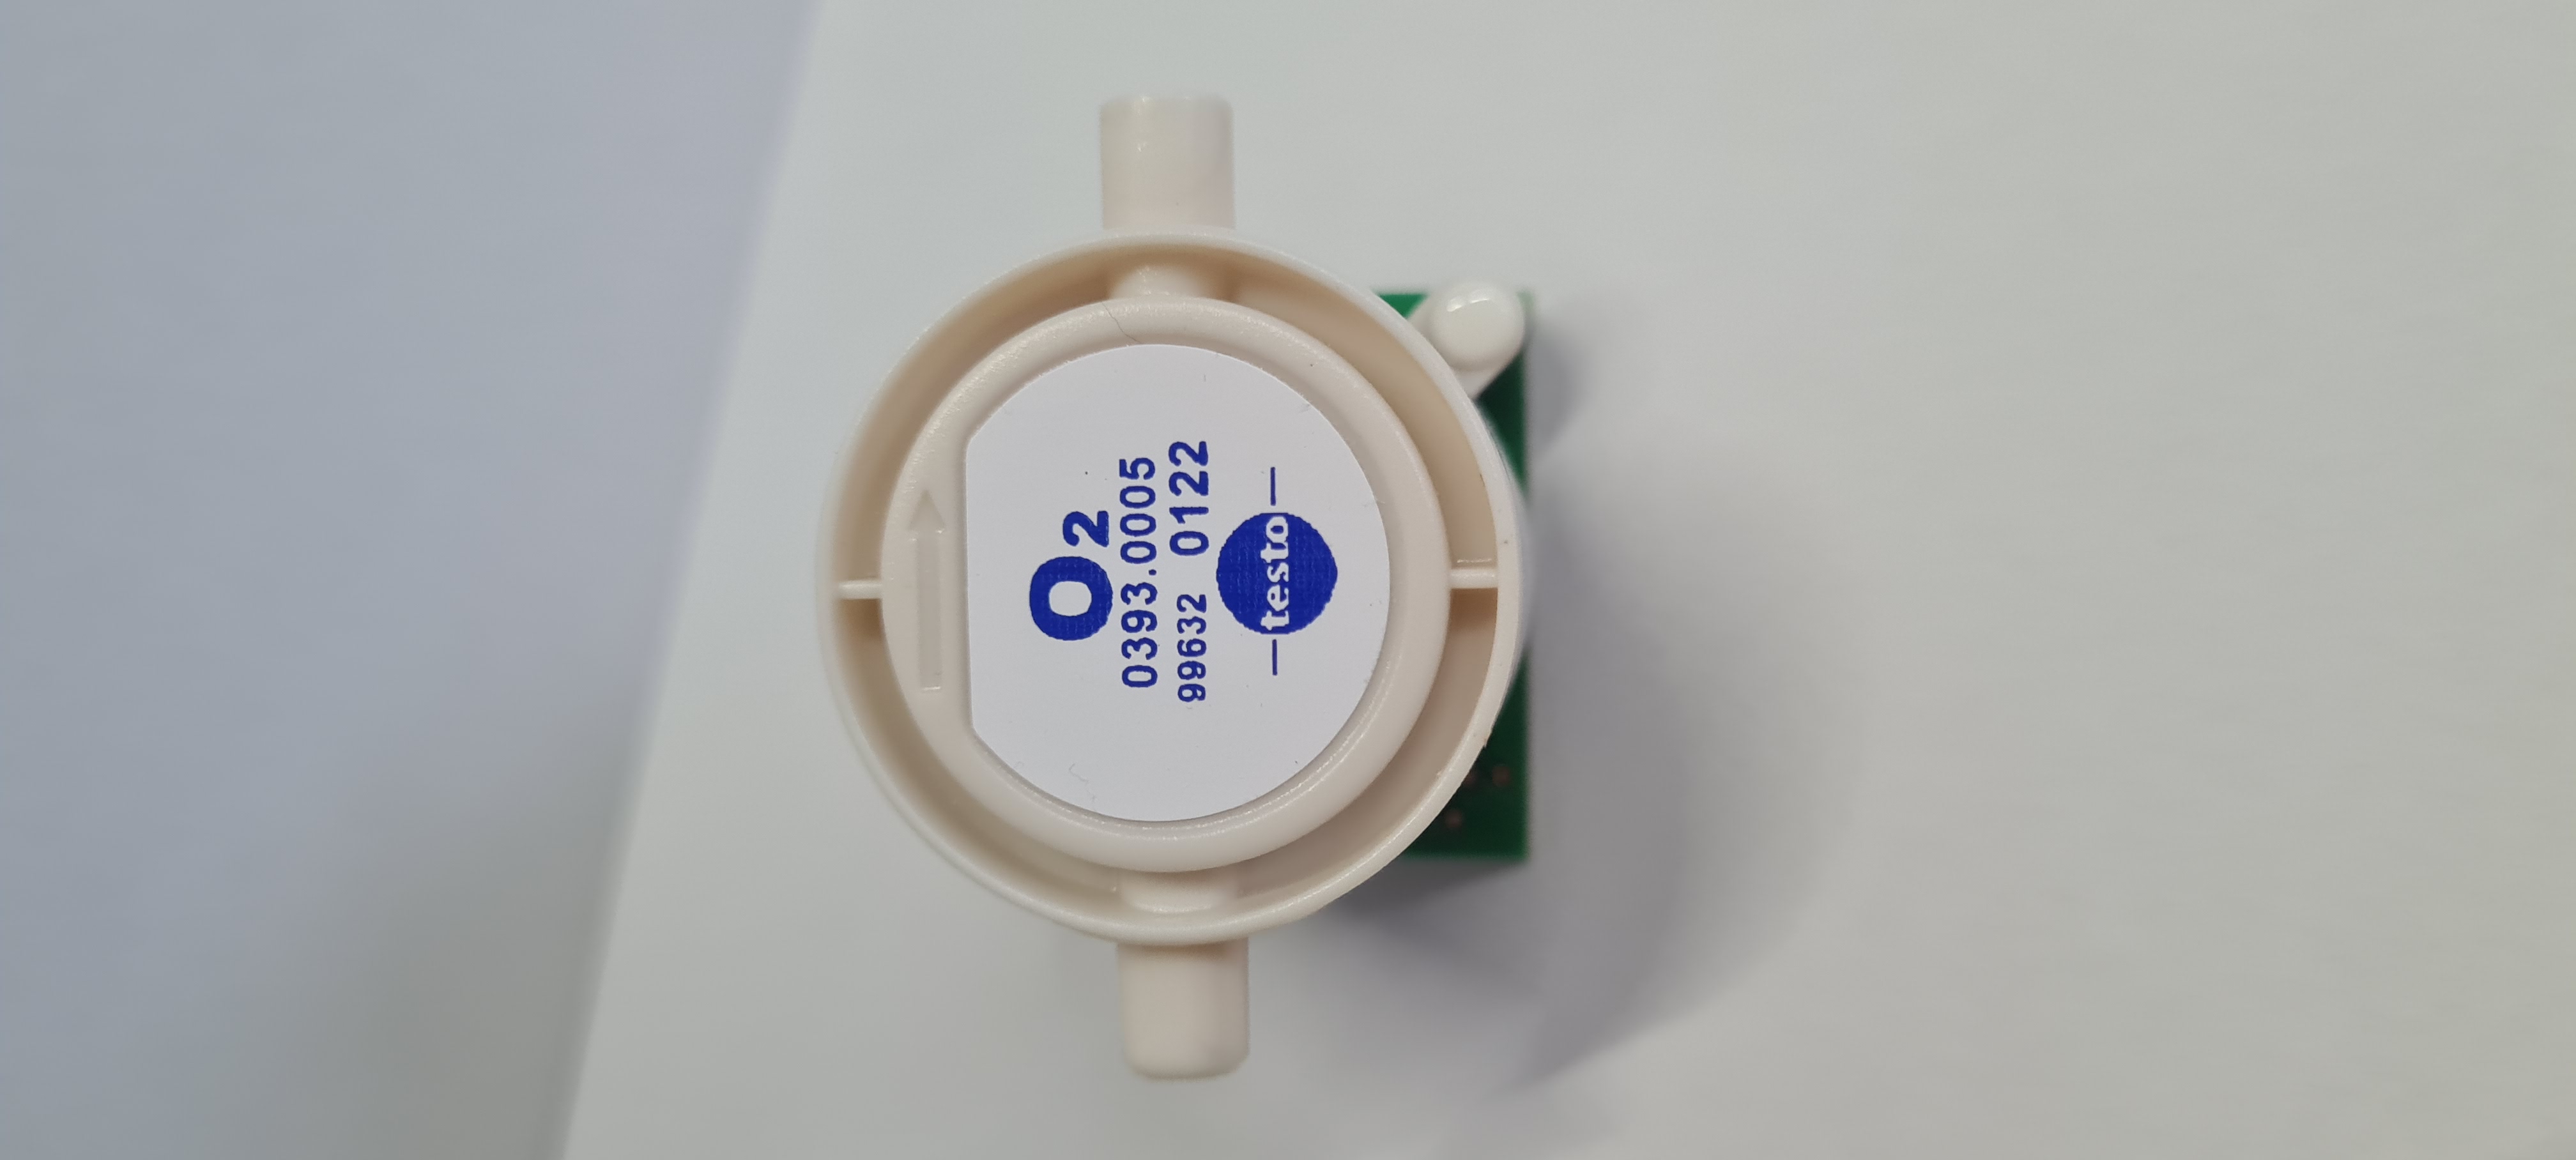 O2-Sensor für testo 320